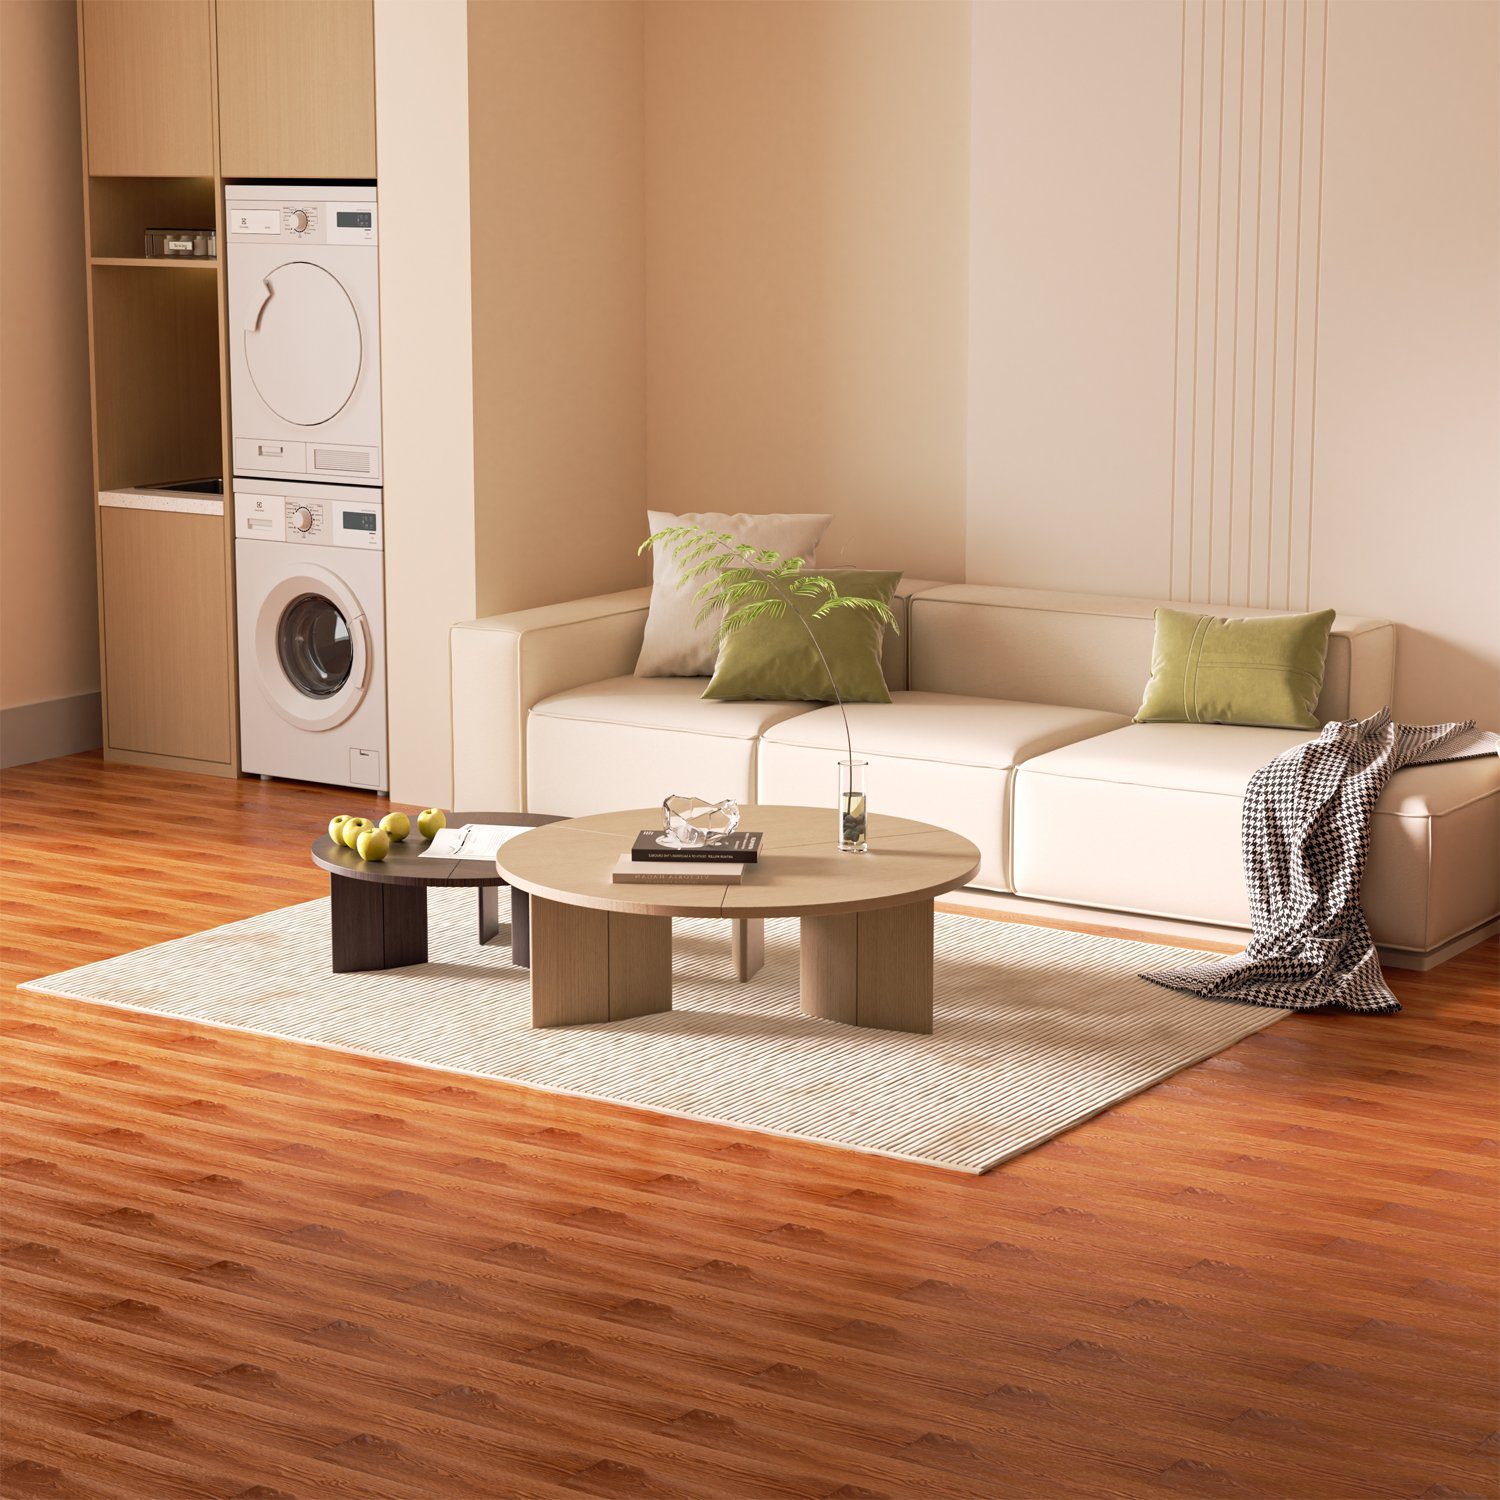 Gimisgu Dekor-Dielen Vinyl Bodenbelag Vinylboden Warm Laminat selbstklebend Classic ca. 1-10m², Selbstklebend Oak